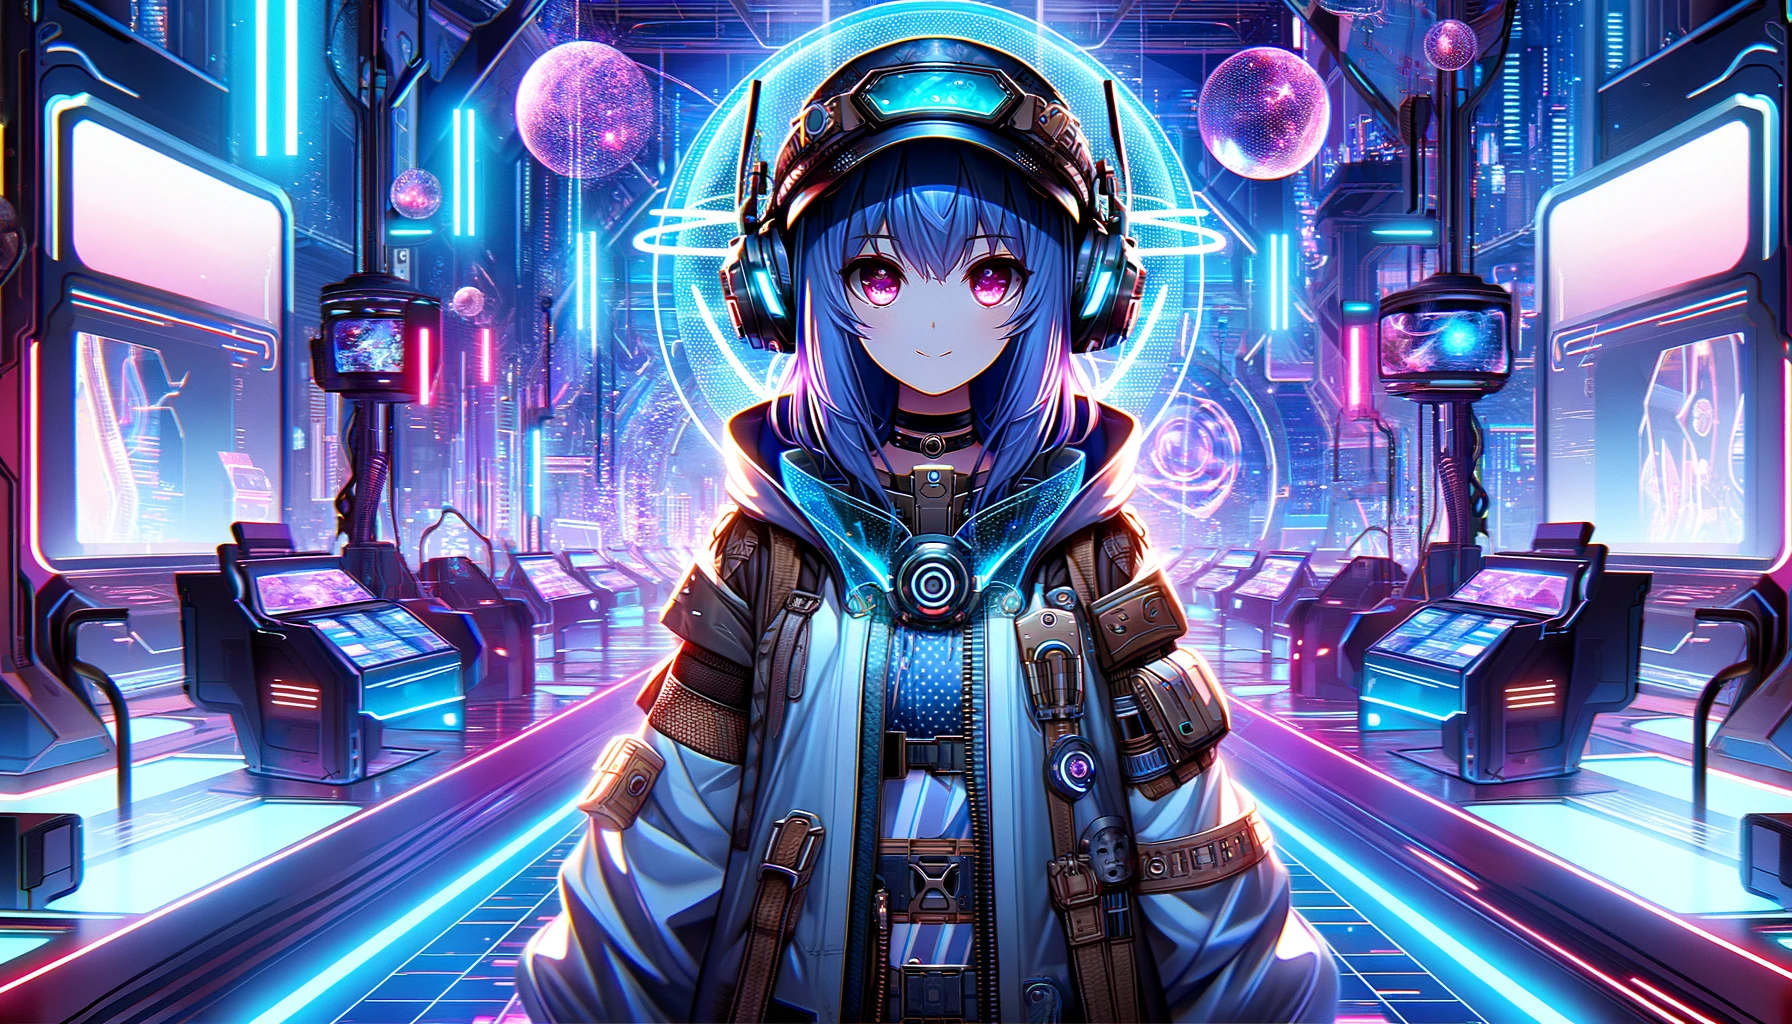 Eine großformatige Illustration, die eine Figur im Anime-Stil mit futuristischer Kleidung und Gesichtszügen in einer Umgebung voller Neonlichter und Science-Fiction-Motive zeigt, die den thematischen Elementen eines Weltraum-Fantasy-Spiels ähnelt